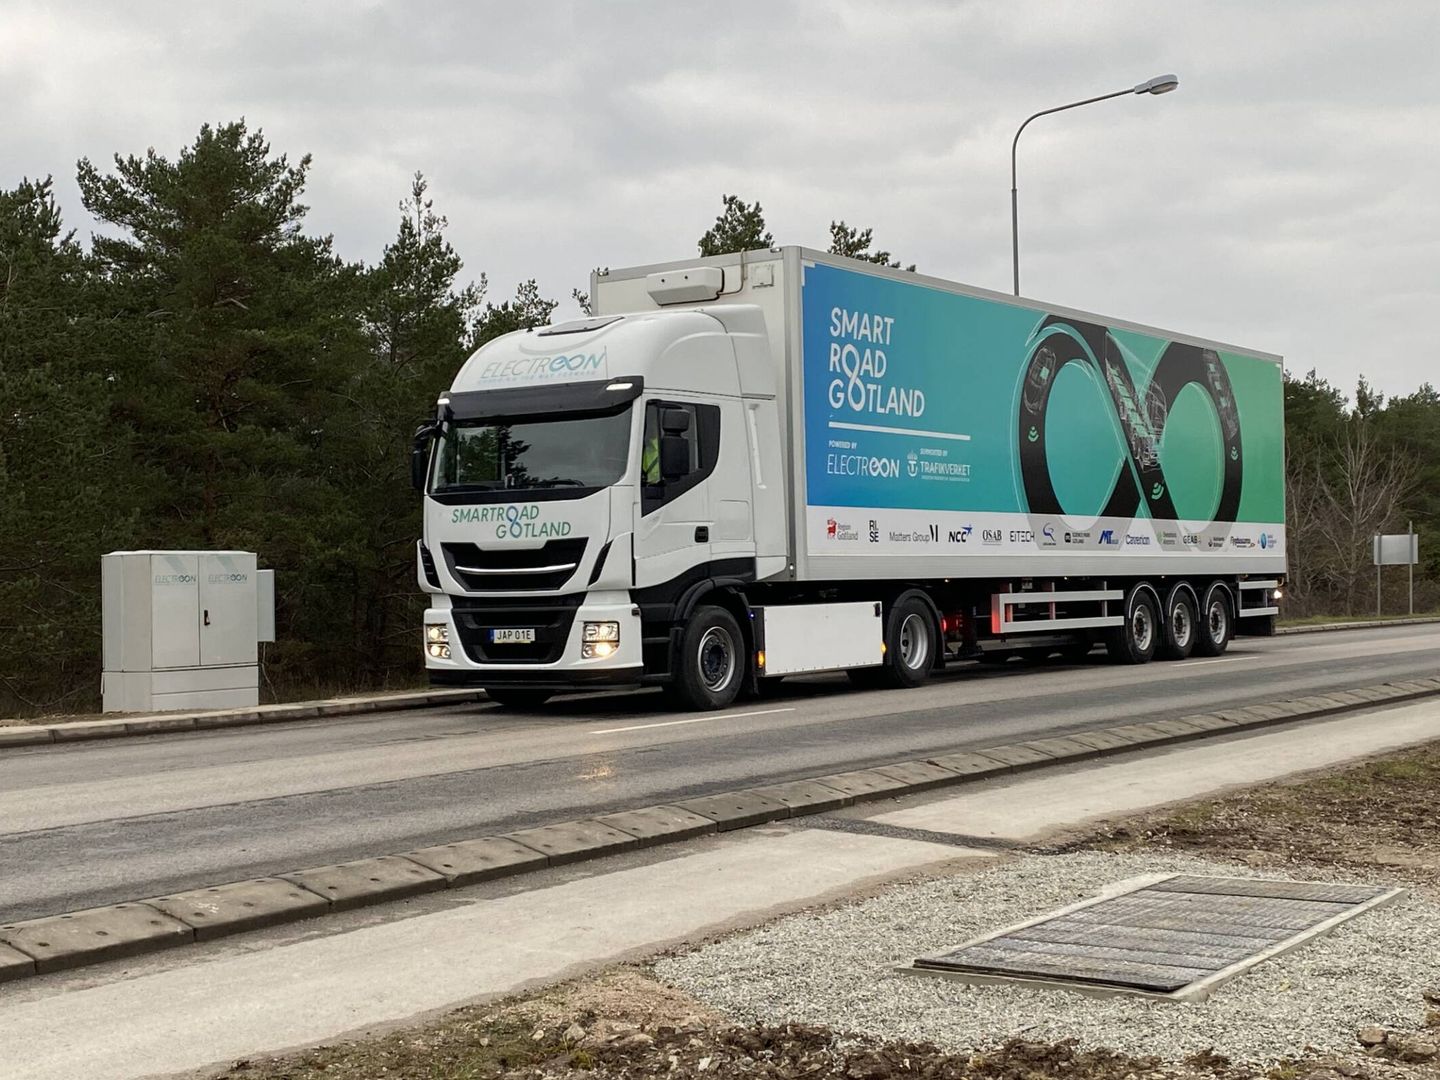 En 2022 se inaugurará en Suecia la primera carretera del mundo con recarga por inducción.